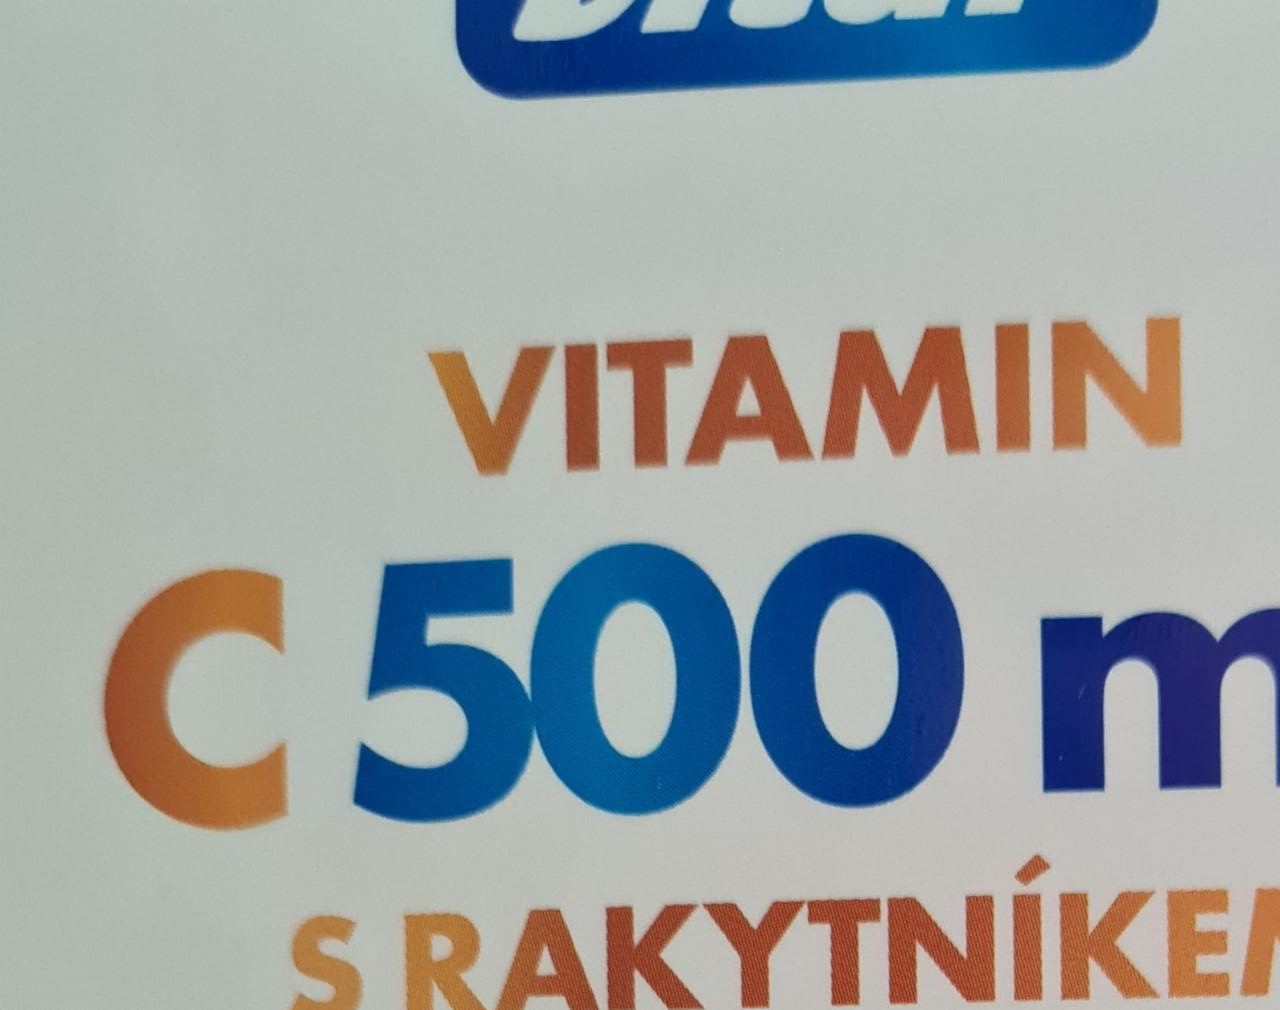 Fotografie - Vitamin C 500mg s rakytníkem Vitar